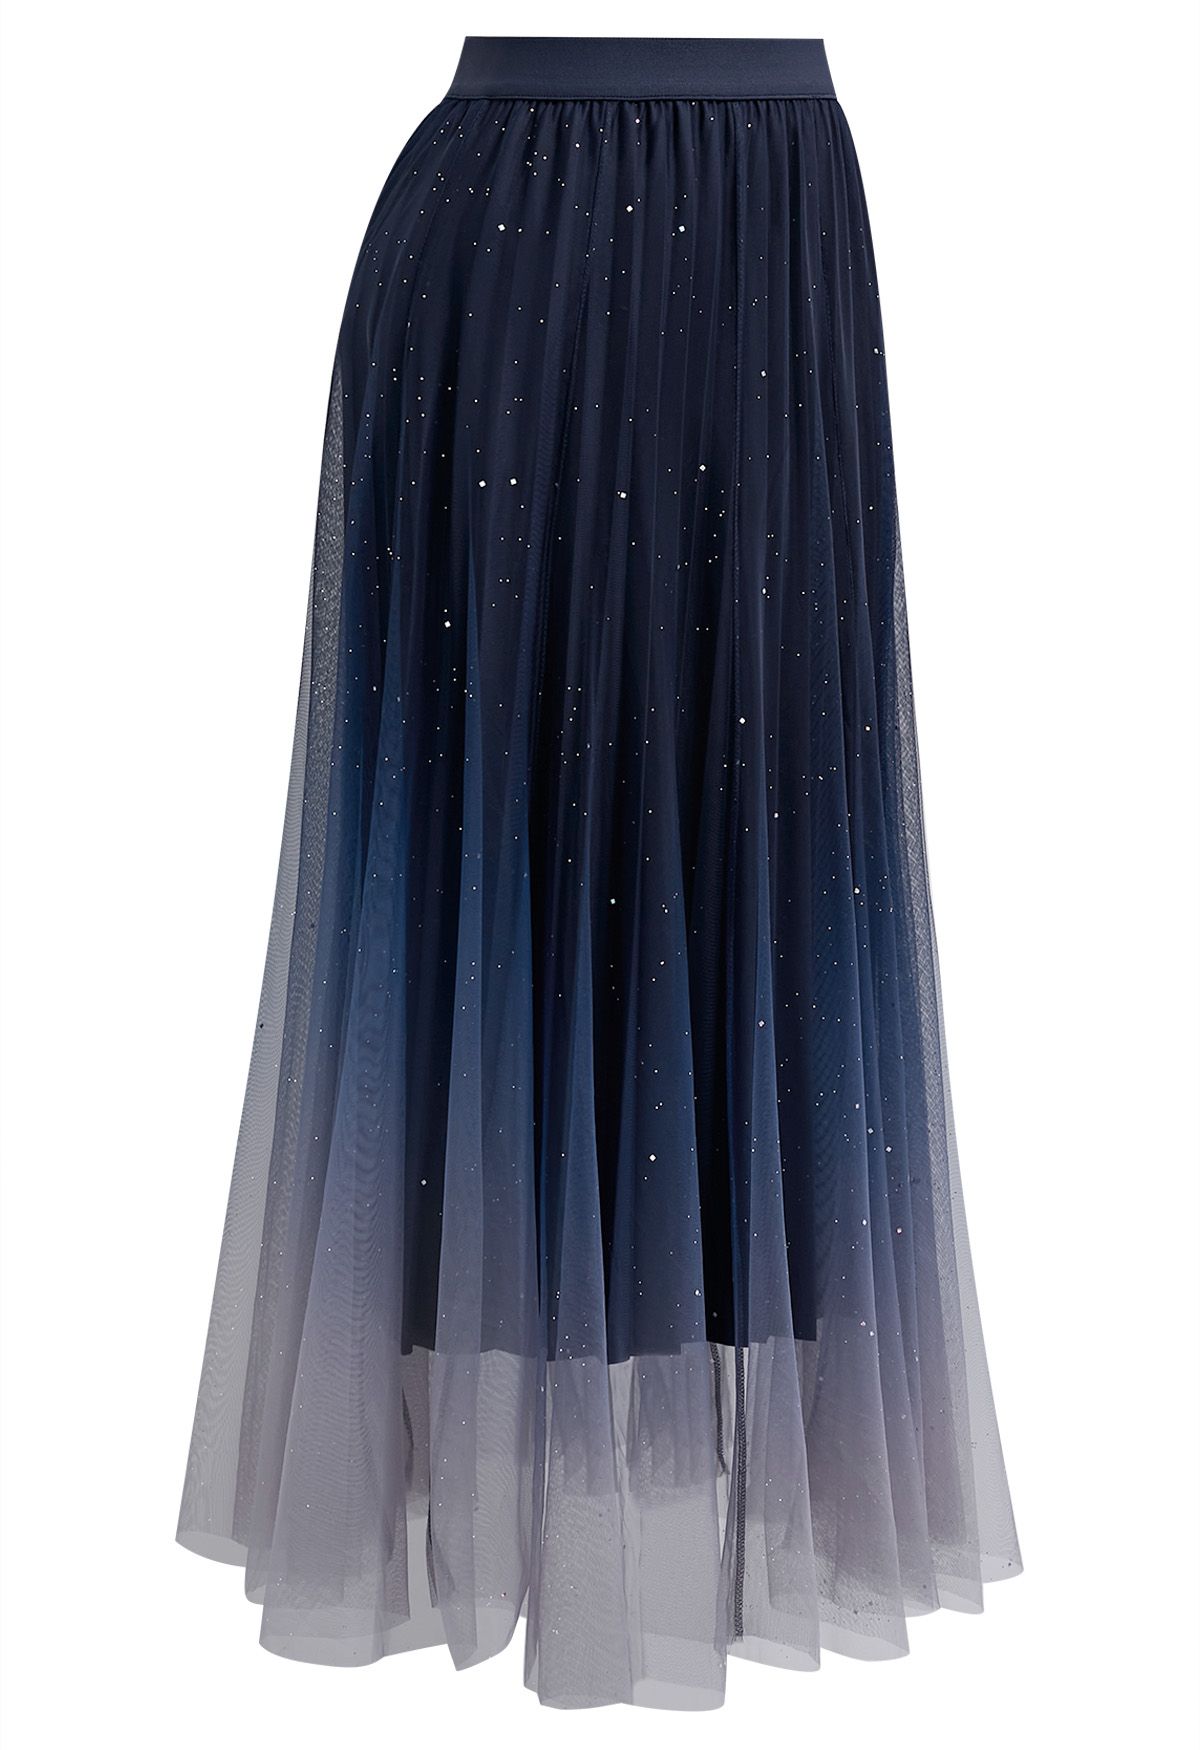 Falda midi con lentejuelas y malla degradada en azul marino